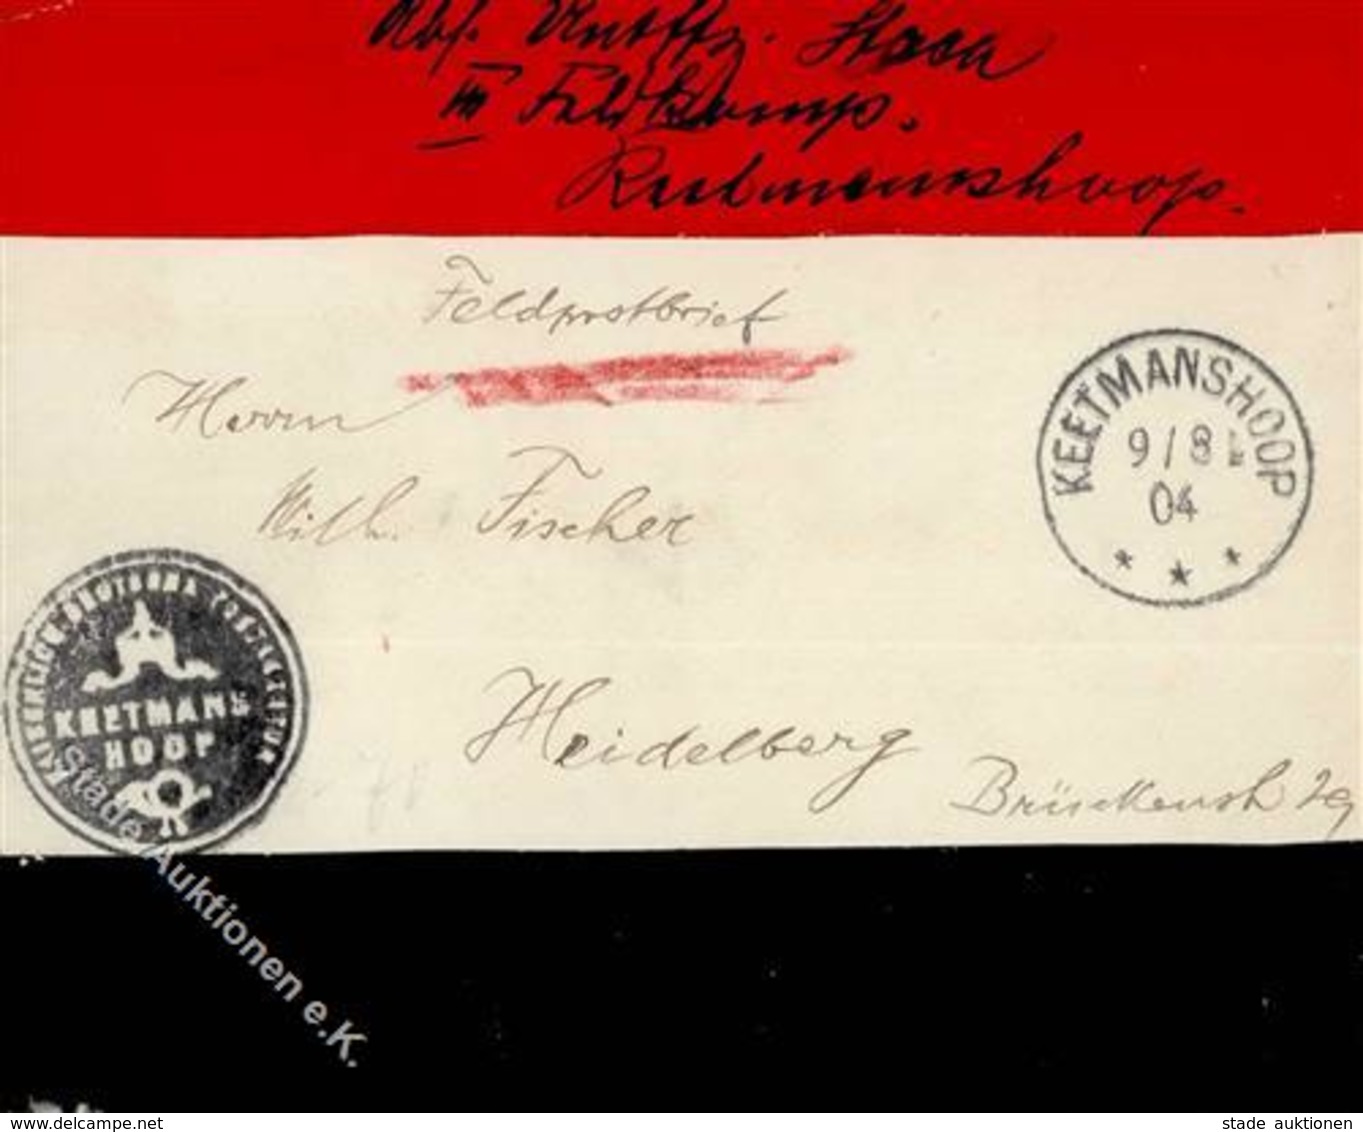 Kolonien Deutsch-Südwestafrika Feldpost-Brief, K1 KEETMANSHOOP 9/8 04", Brief Mit Rotem Und Schwarzem Streifen, Sowie Fe - Histoire